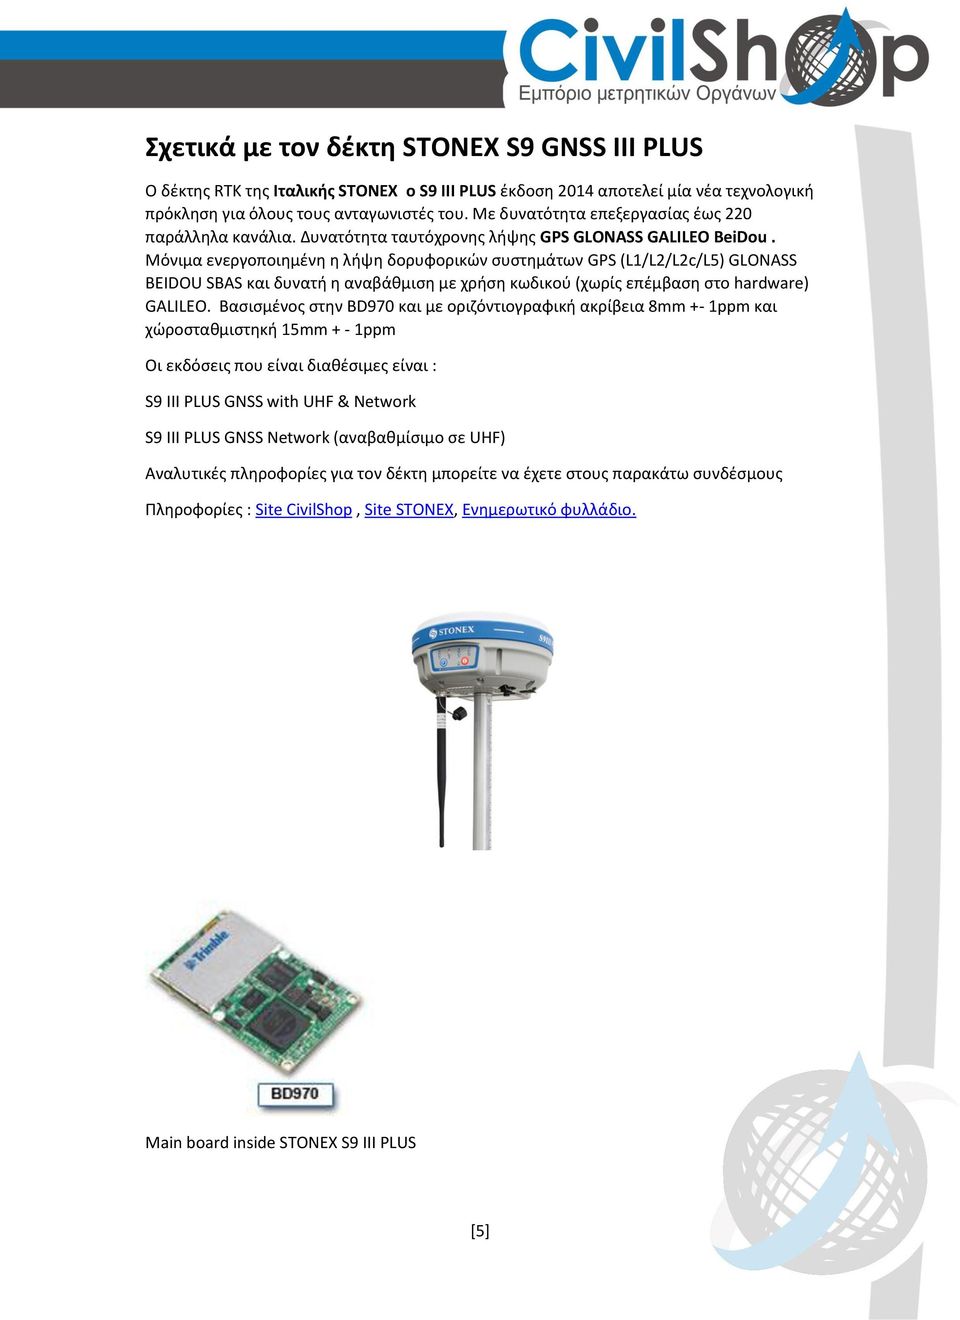 Μόνιμα ενεργοποιημένη η λήψη δορυφορικών συστημάτων GPS (L1/L2/L2c/L5) GLONASS BEIDOU SBAS και δυνατή η αναβάθμιση με χρήση κωδικού (χωρίς επέμβαση στο hardware) GALILEO.